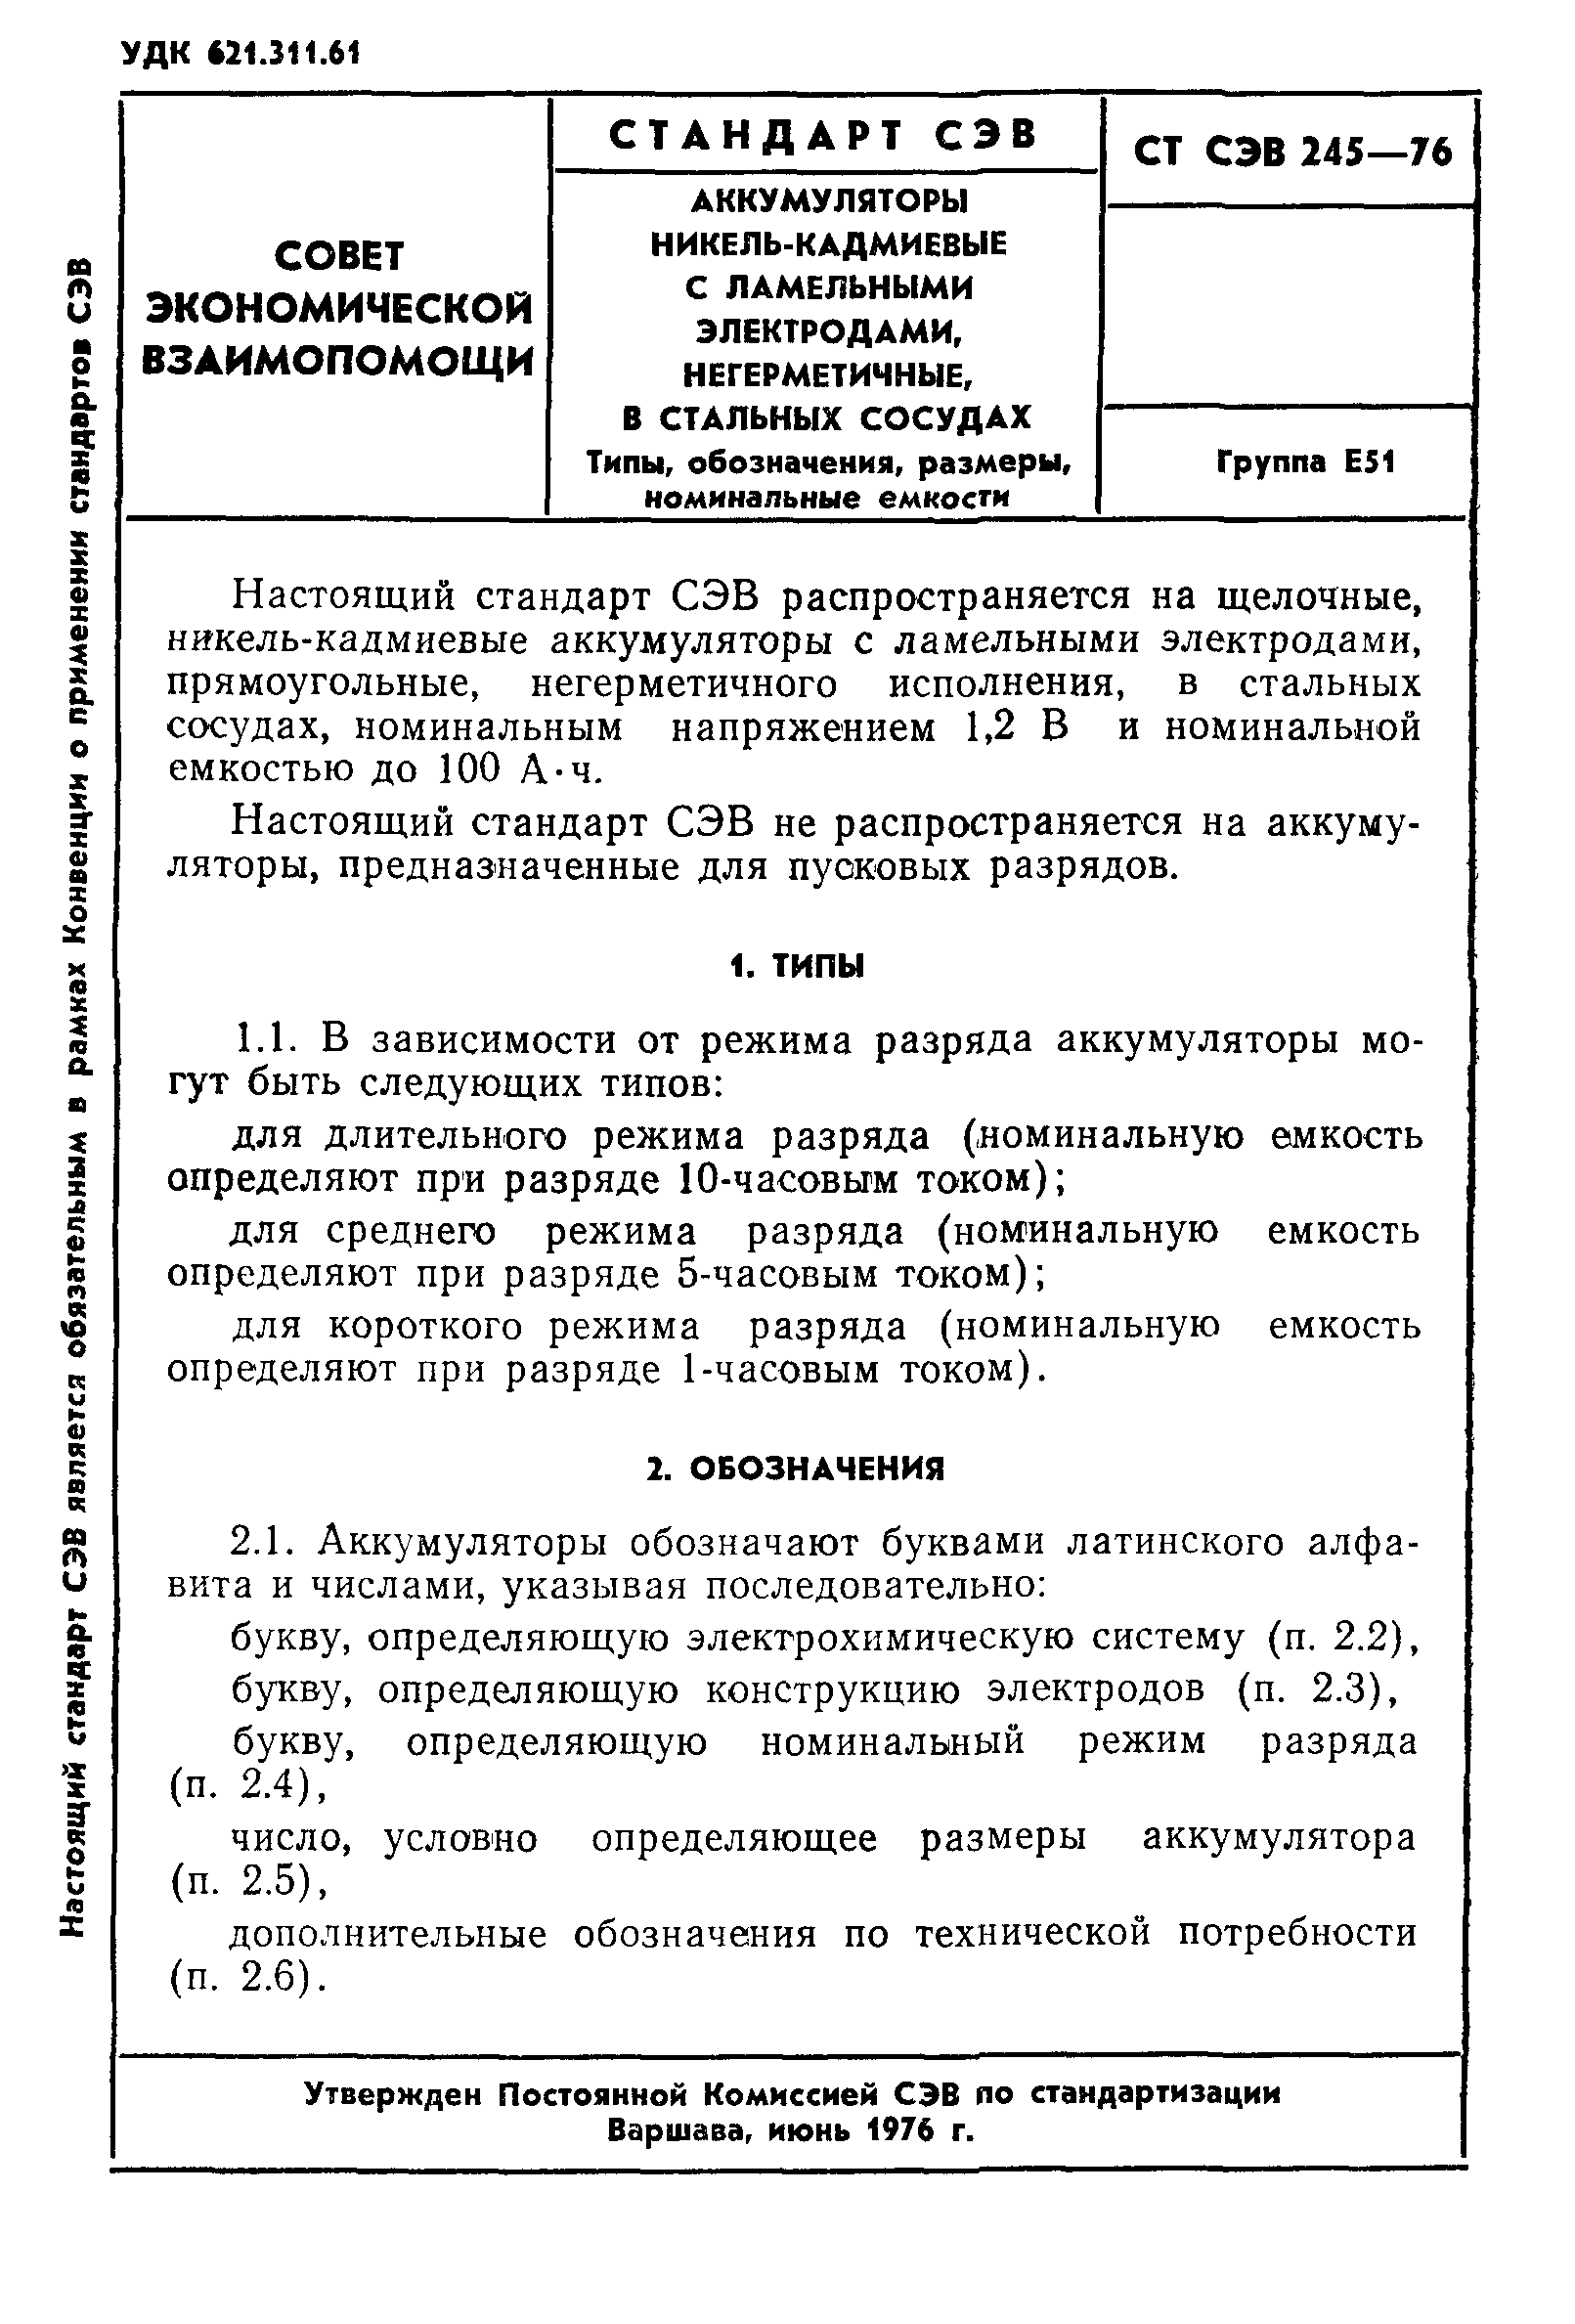 СТ СЭВ 245-76